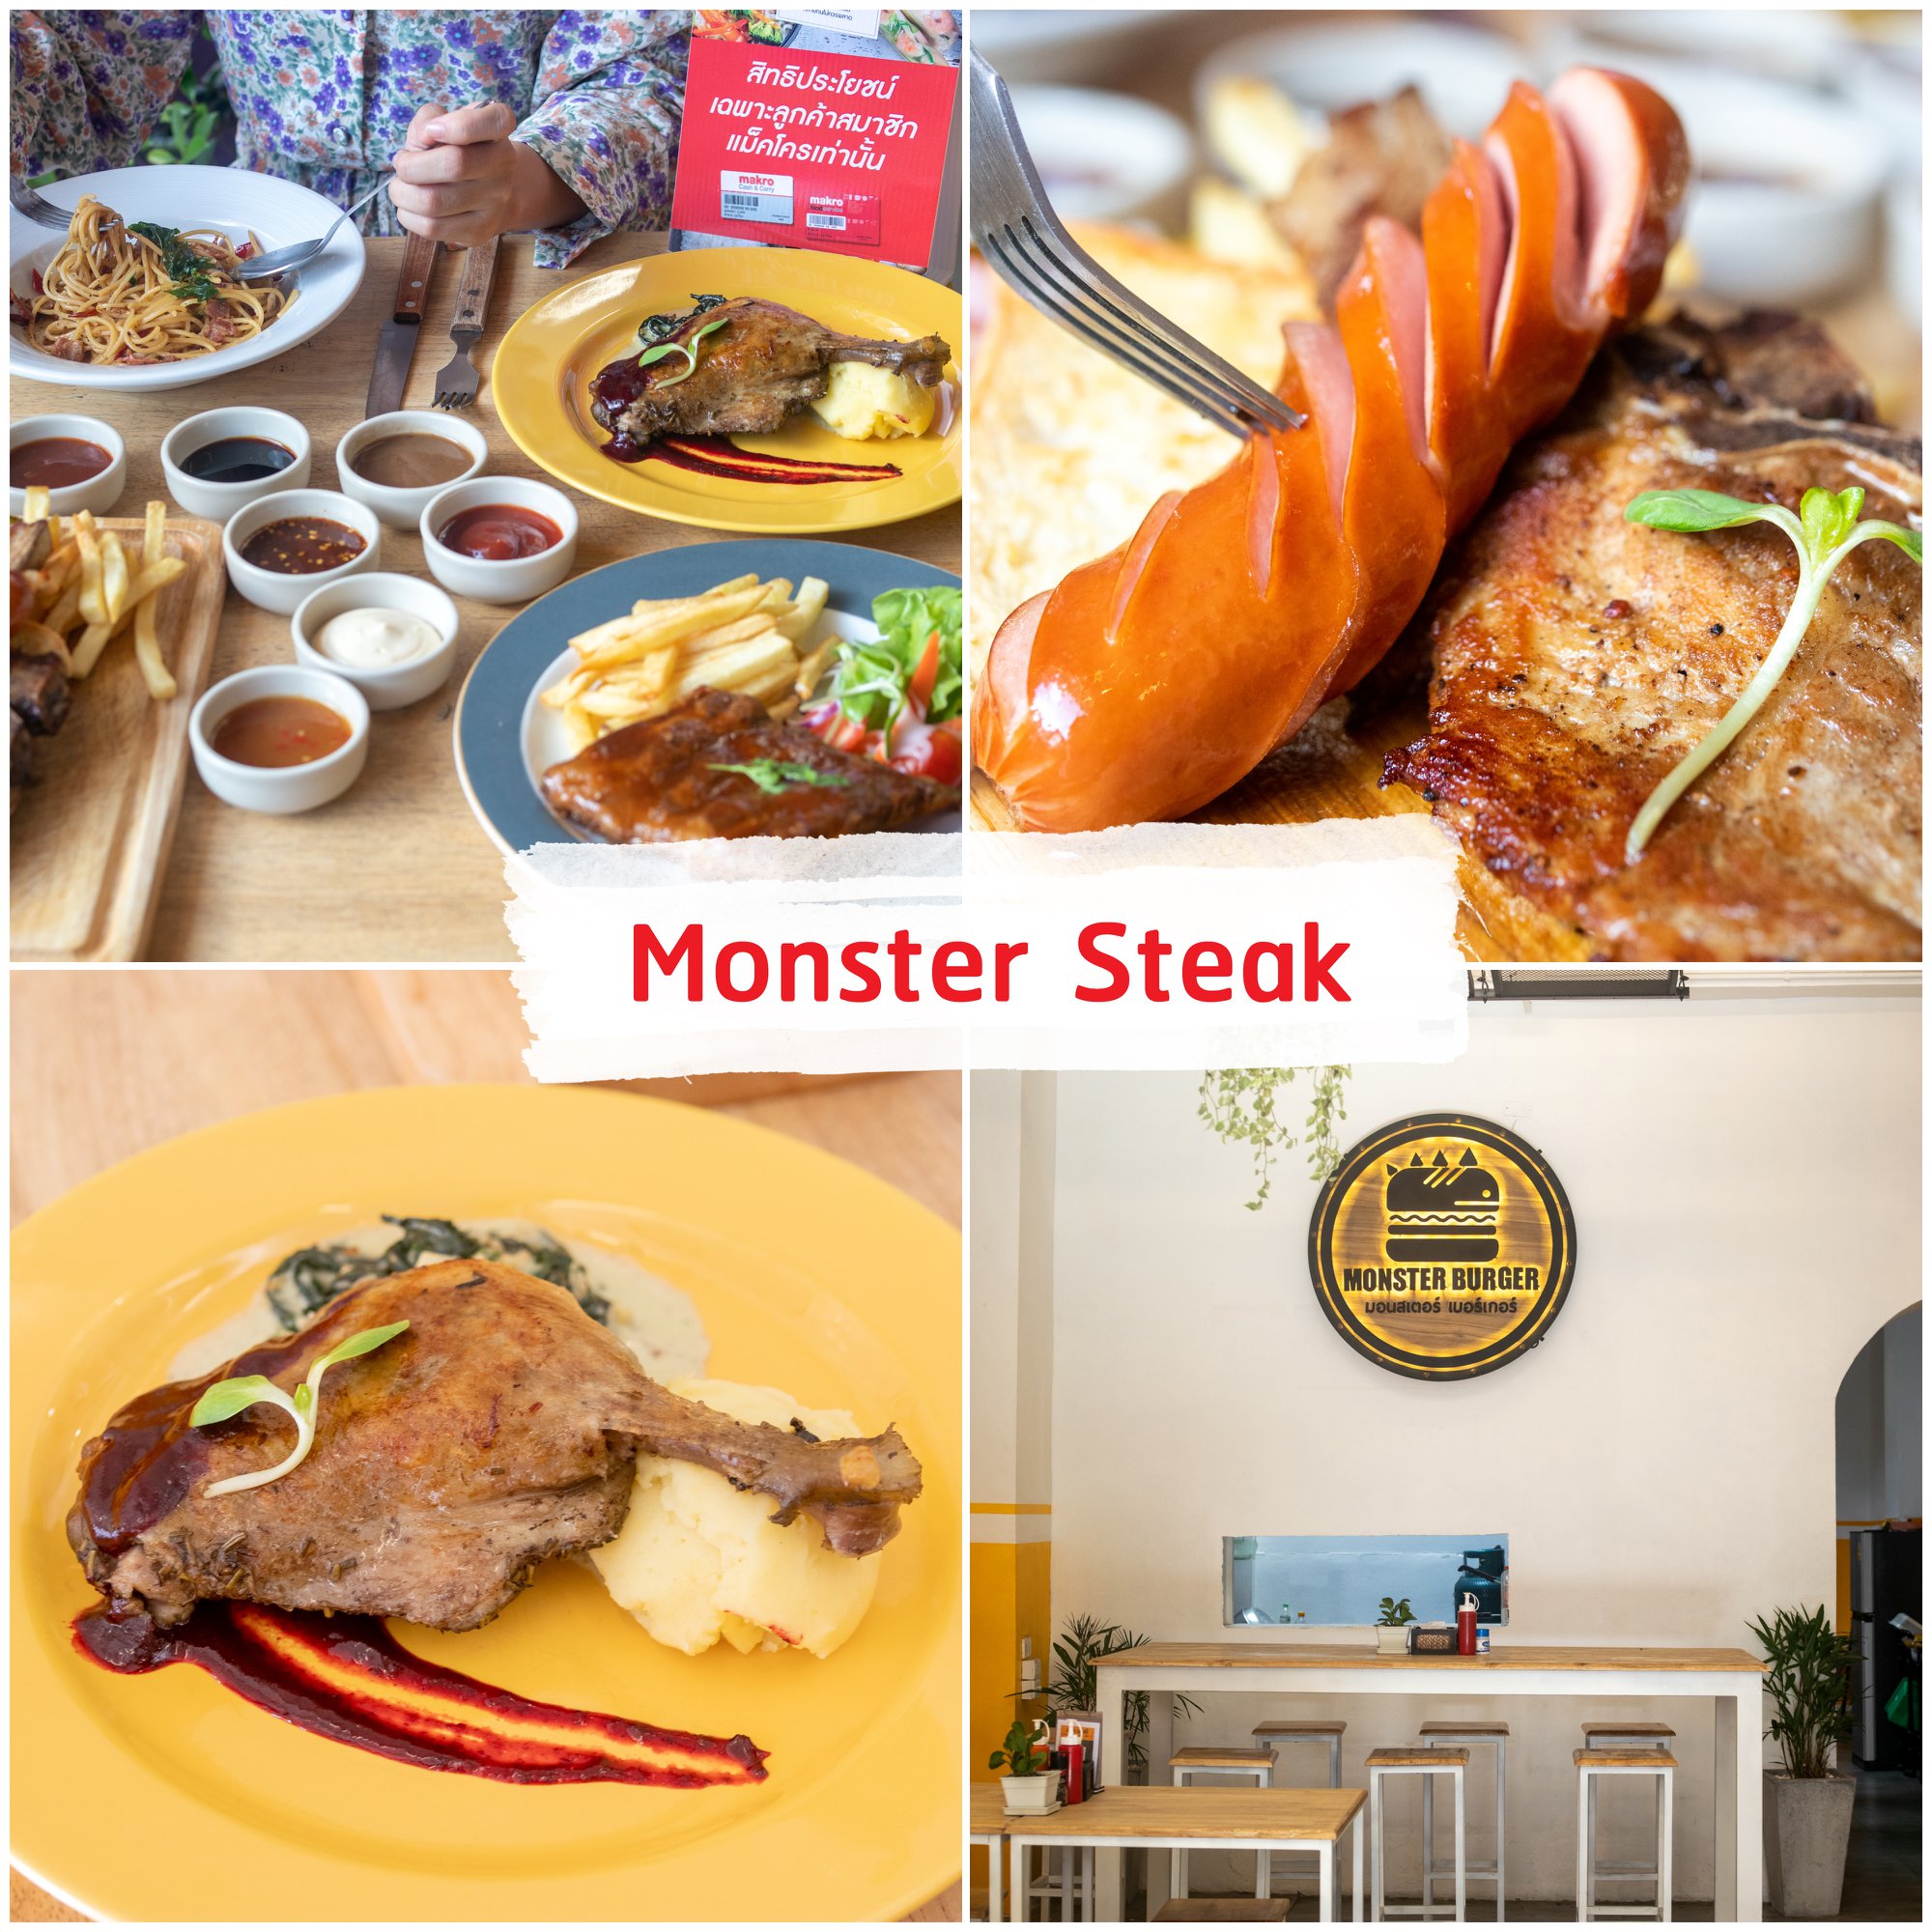 Monster-Steak -สเต็กร้านเด็ดเปิดใหม่แห่งภูเก็ต-ที่ยก-Monster-Burger-ร้านดัง-ในตำนานจากเกาะพีพี-มาให้ลูกค้าเกาะภูเก็ตได้ลิ้มรสกันครับ
เป็นร้านเสต๊กสาย-Healthy-ราคาเอื้อมถึง-เพียงเริ่มต้นที่-69-บาทเท่านั้น-จุดเด่นอีกอย่างคือมีซอสให้เลือกมากมายหลายแบบ-และที่เด็ดที่สุดคือเนื้อนุ่มๆ-ทุกเมนูเลยครับ-การันตีมากๆ-ถ้าไม่เชื่อต้องไปลอง---
 ภูเก็ต,ร้านอาหารภูเก็ต,ร้านอร่อยภูเก็ต